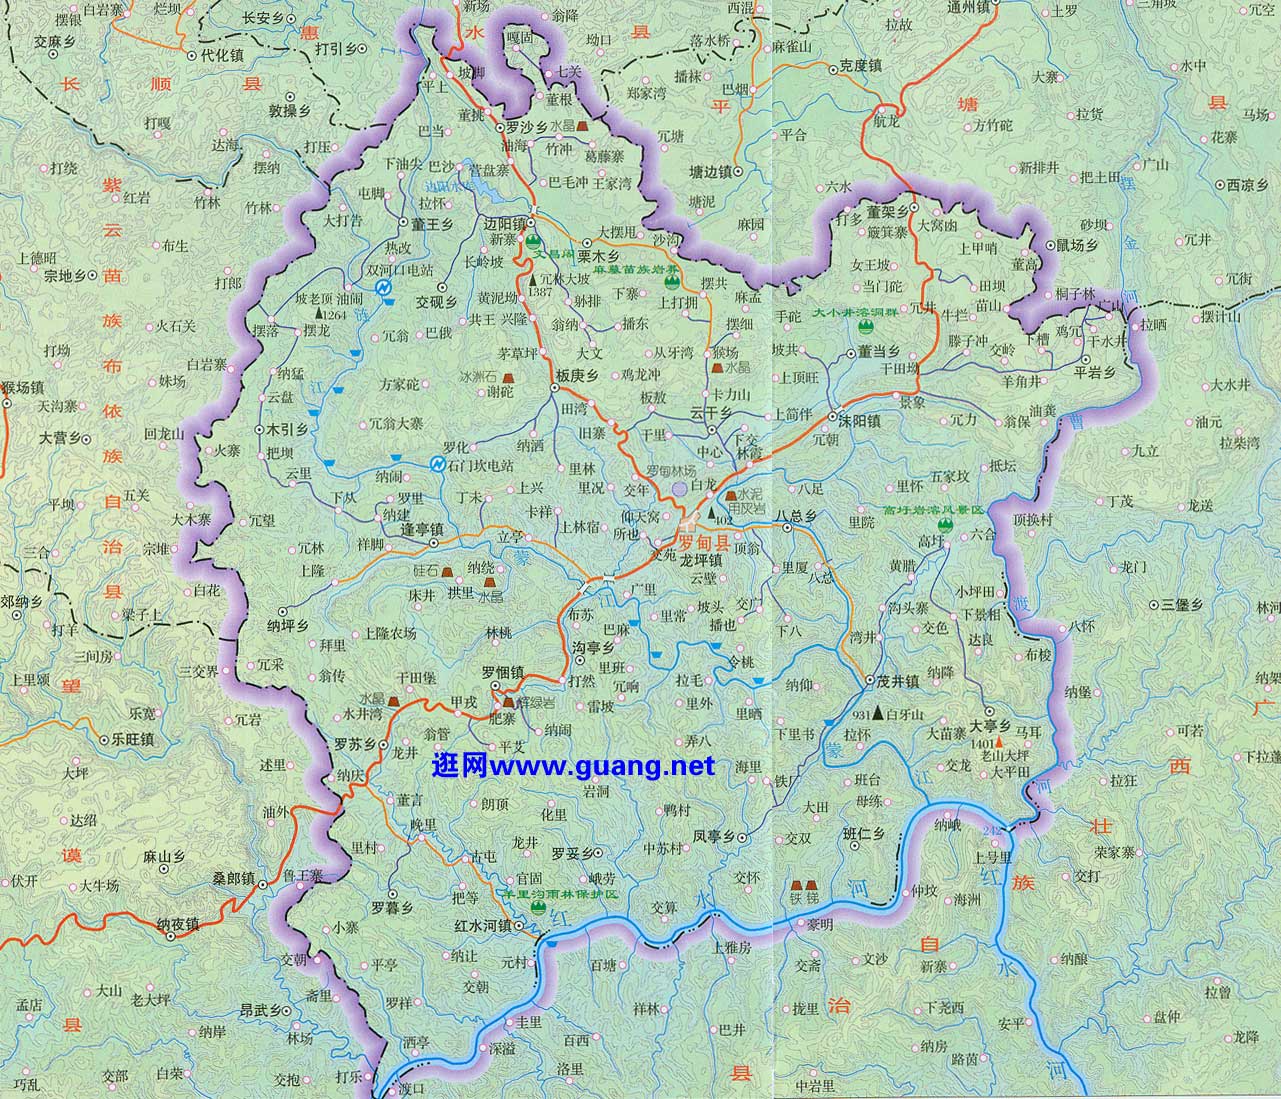 2019-12-21 09:42提供最全的黔南州地图全图更新频率高,品类多!